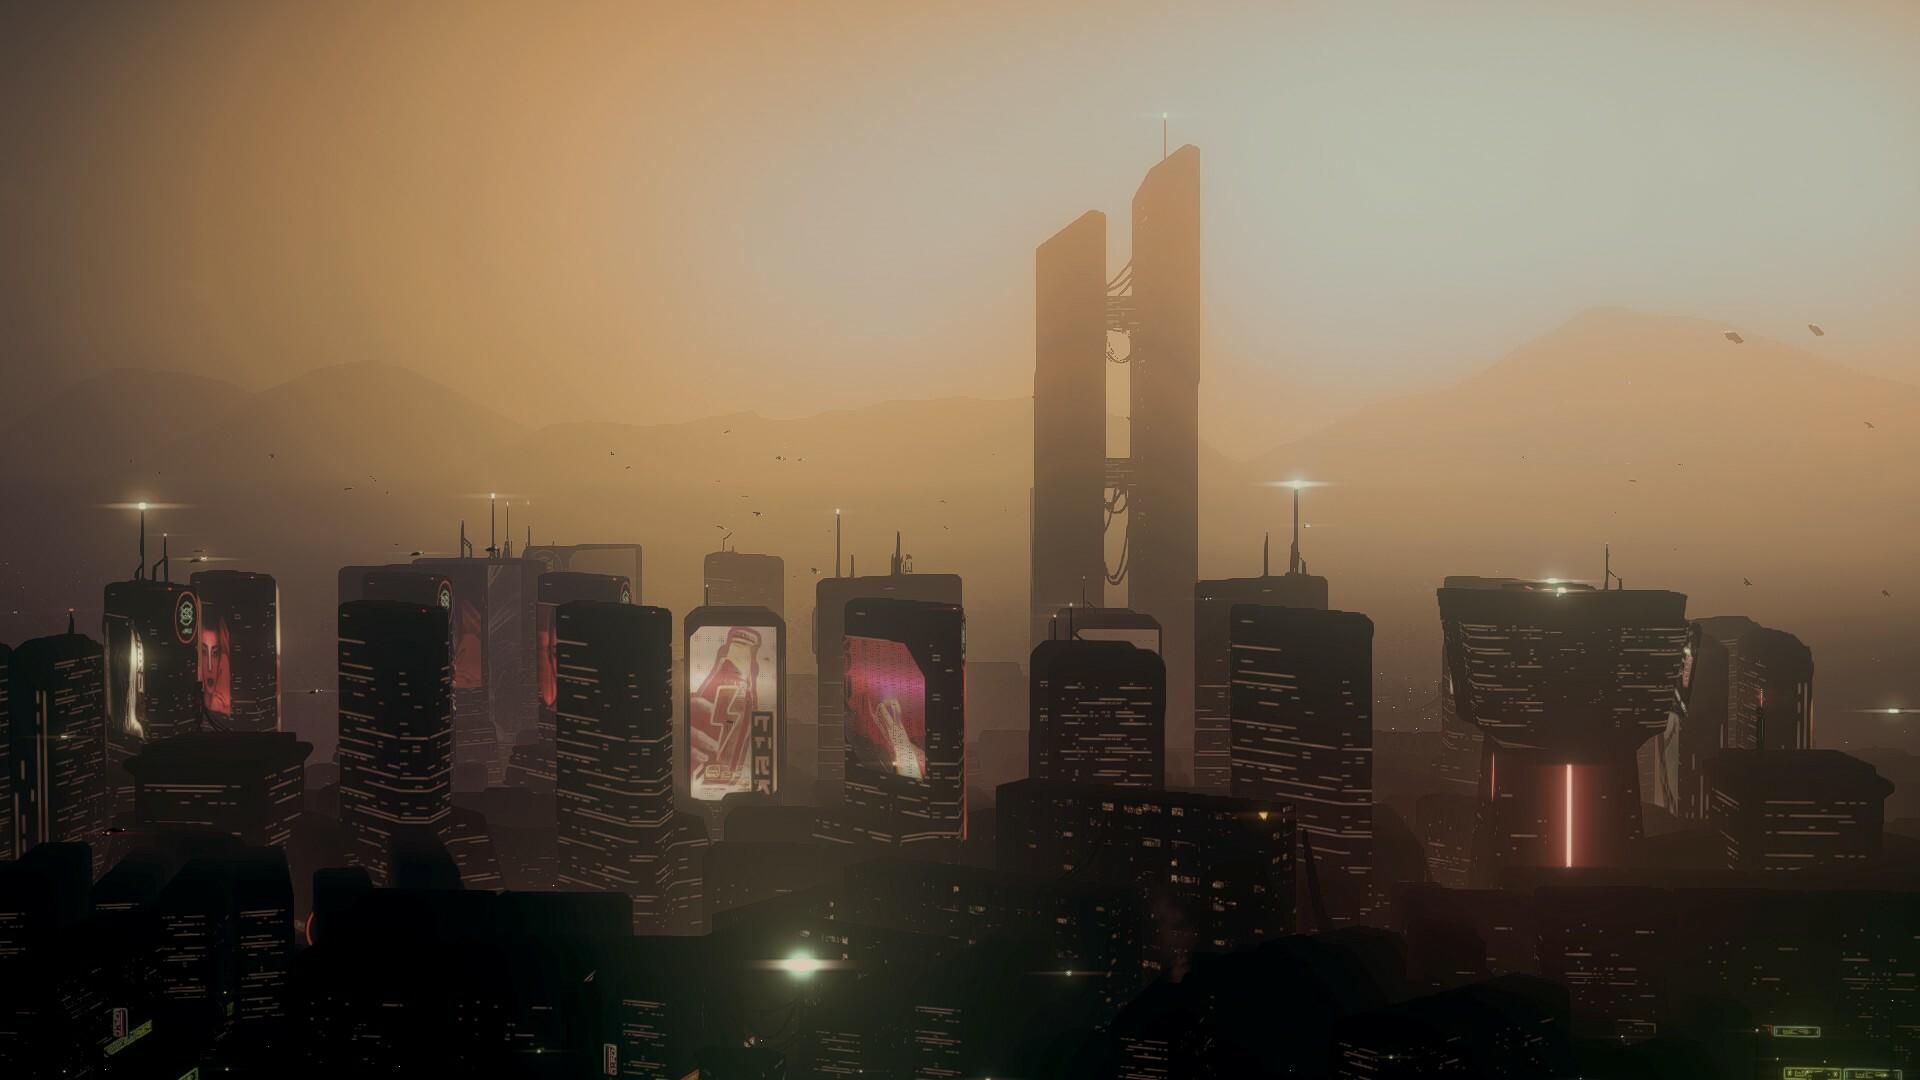 Dystopika screenshot game